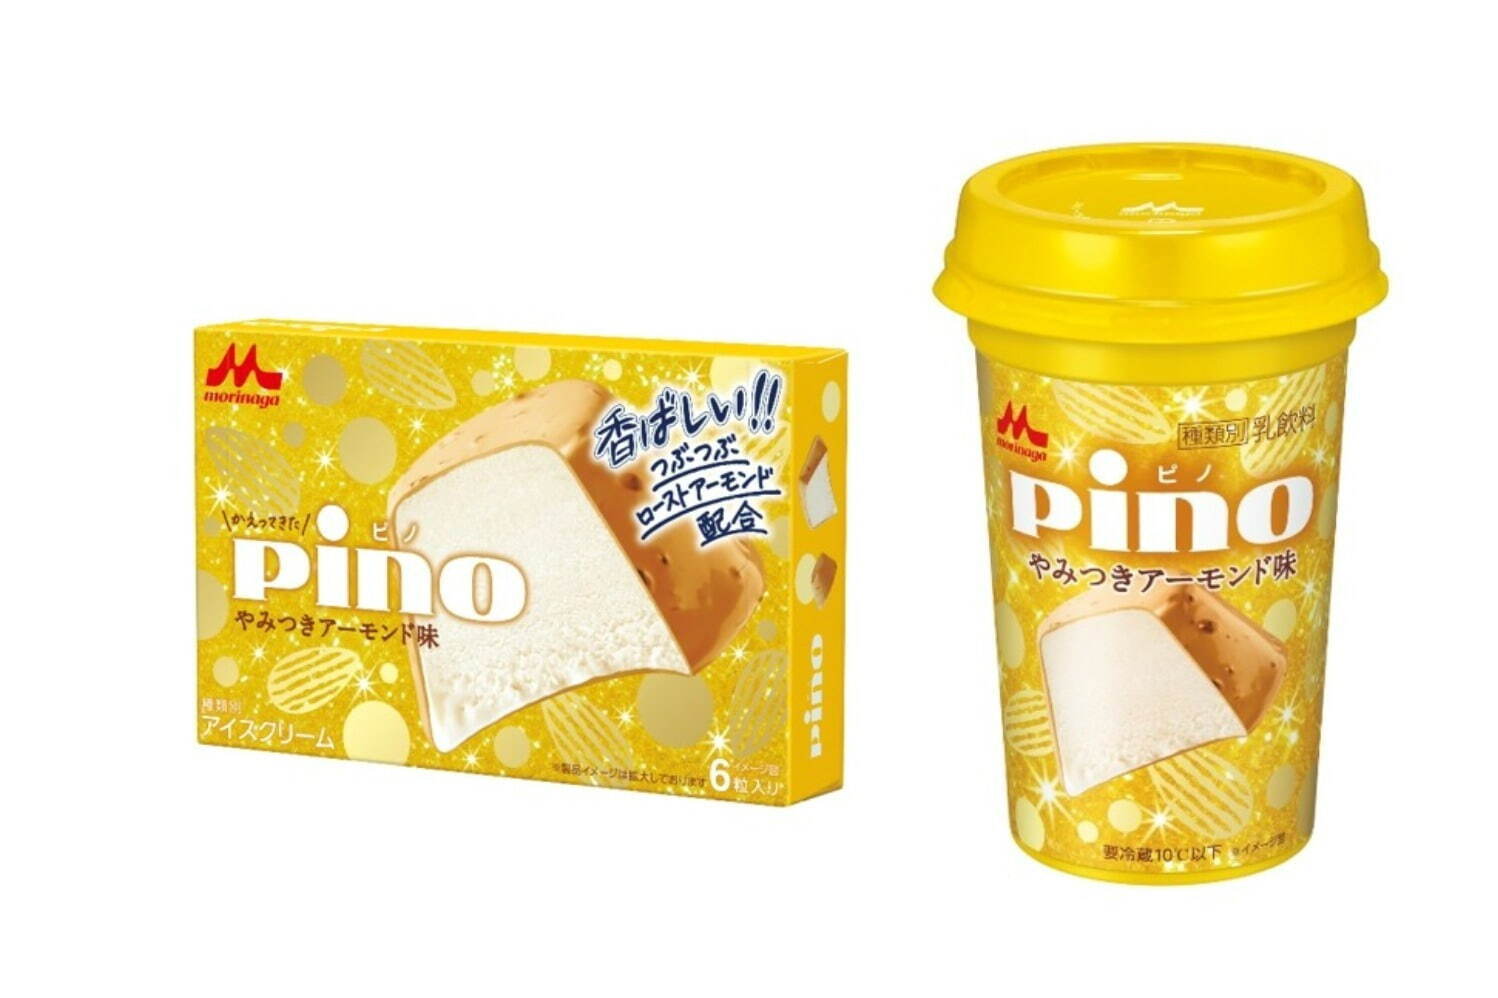 左から) ピノ やみつきアーモンド味(アイス) 180円 ピノ やみつきアーモンド味(ドリンク) 180円